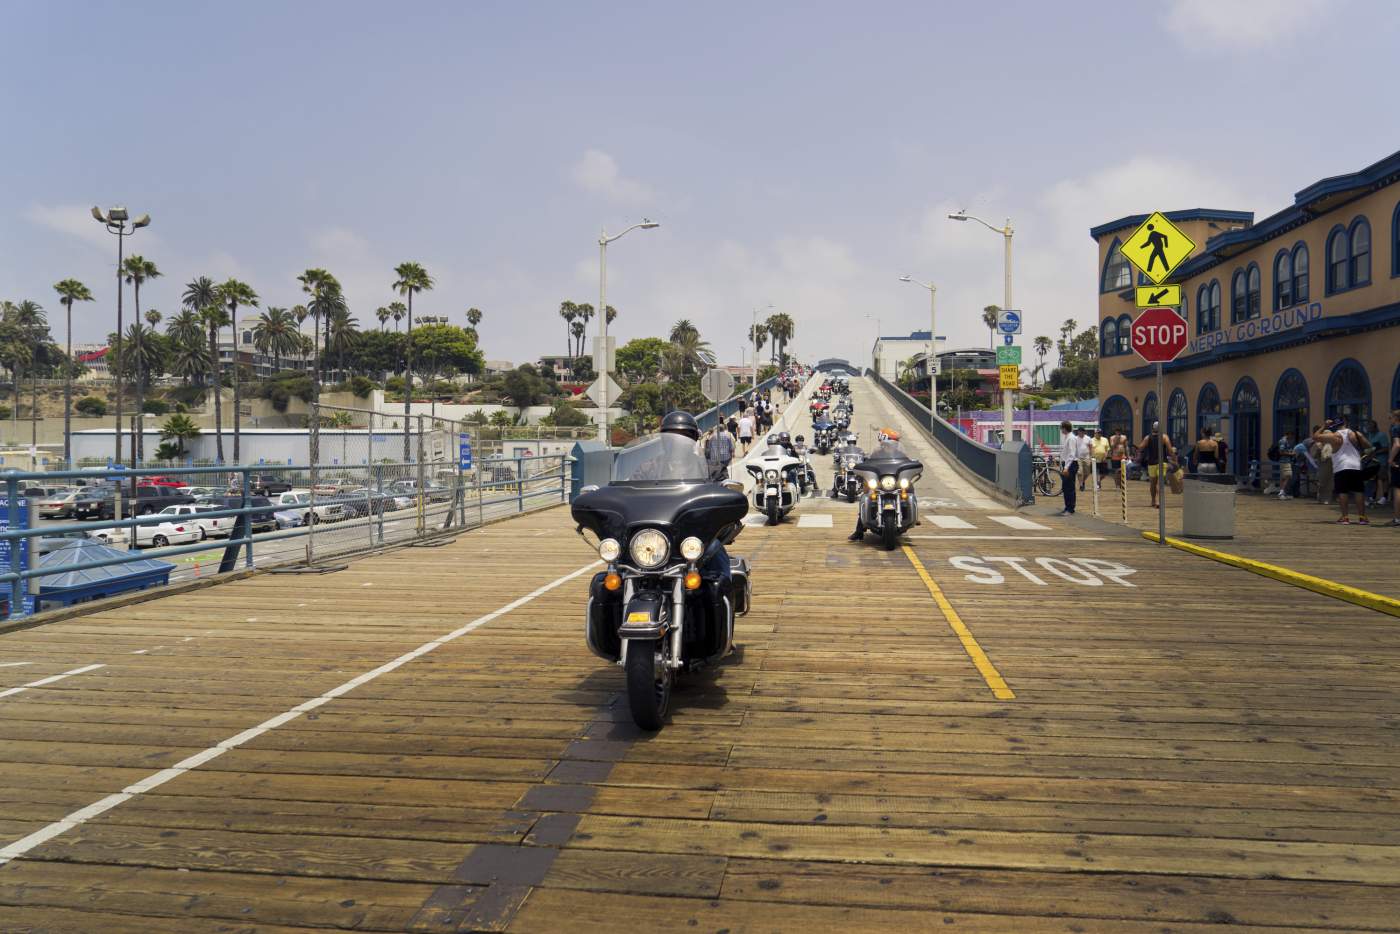 Santa Monica Pier Kalifornien Motorradreise durch den Westen der USA Abenteuer Wild West 